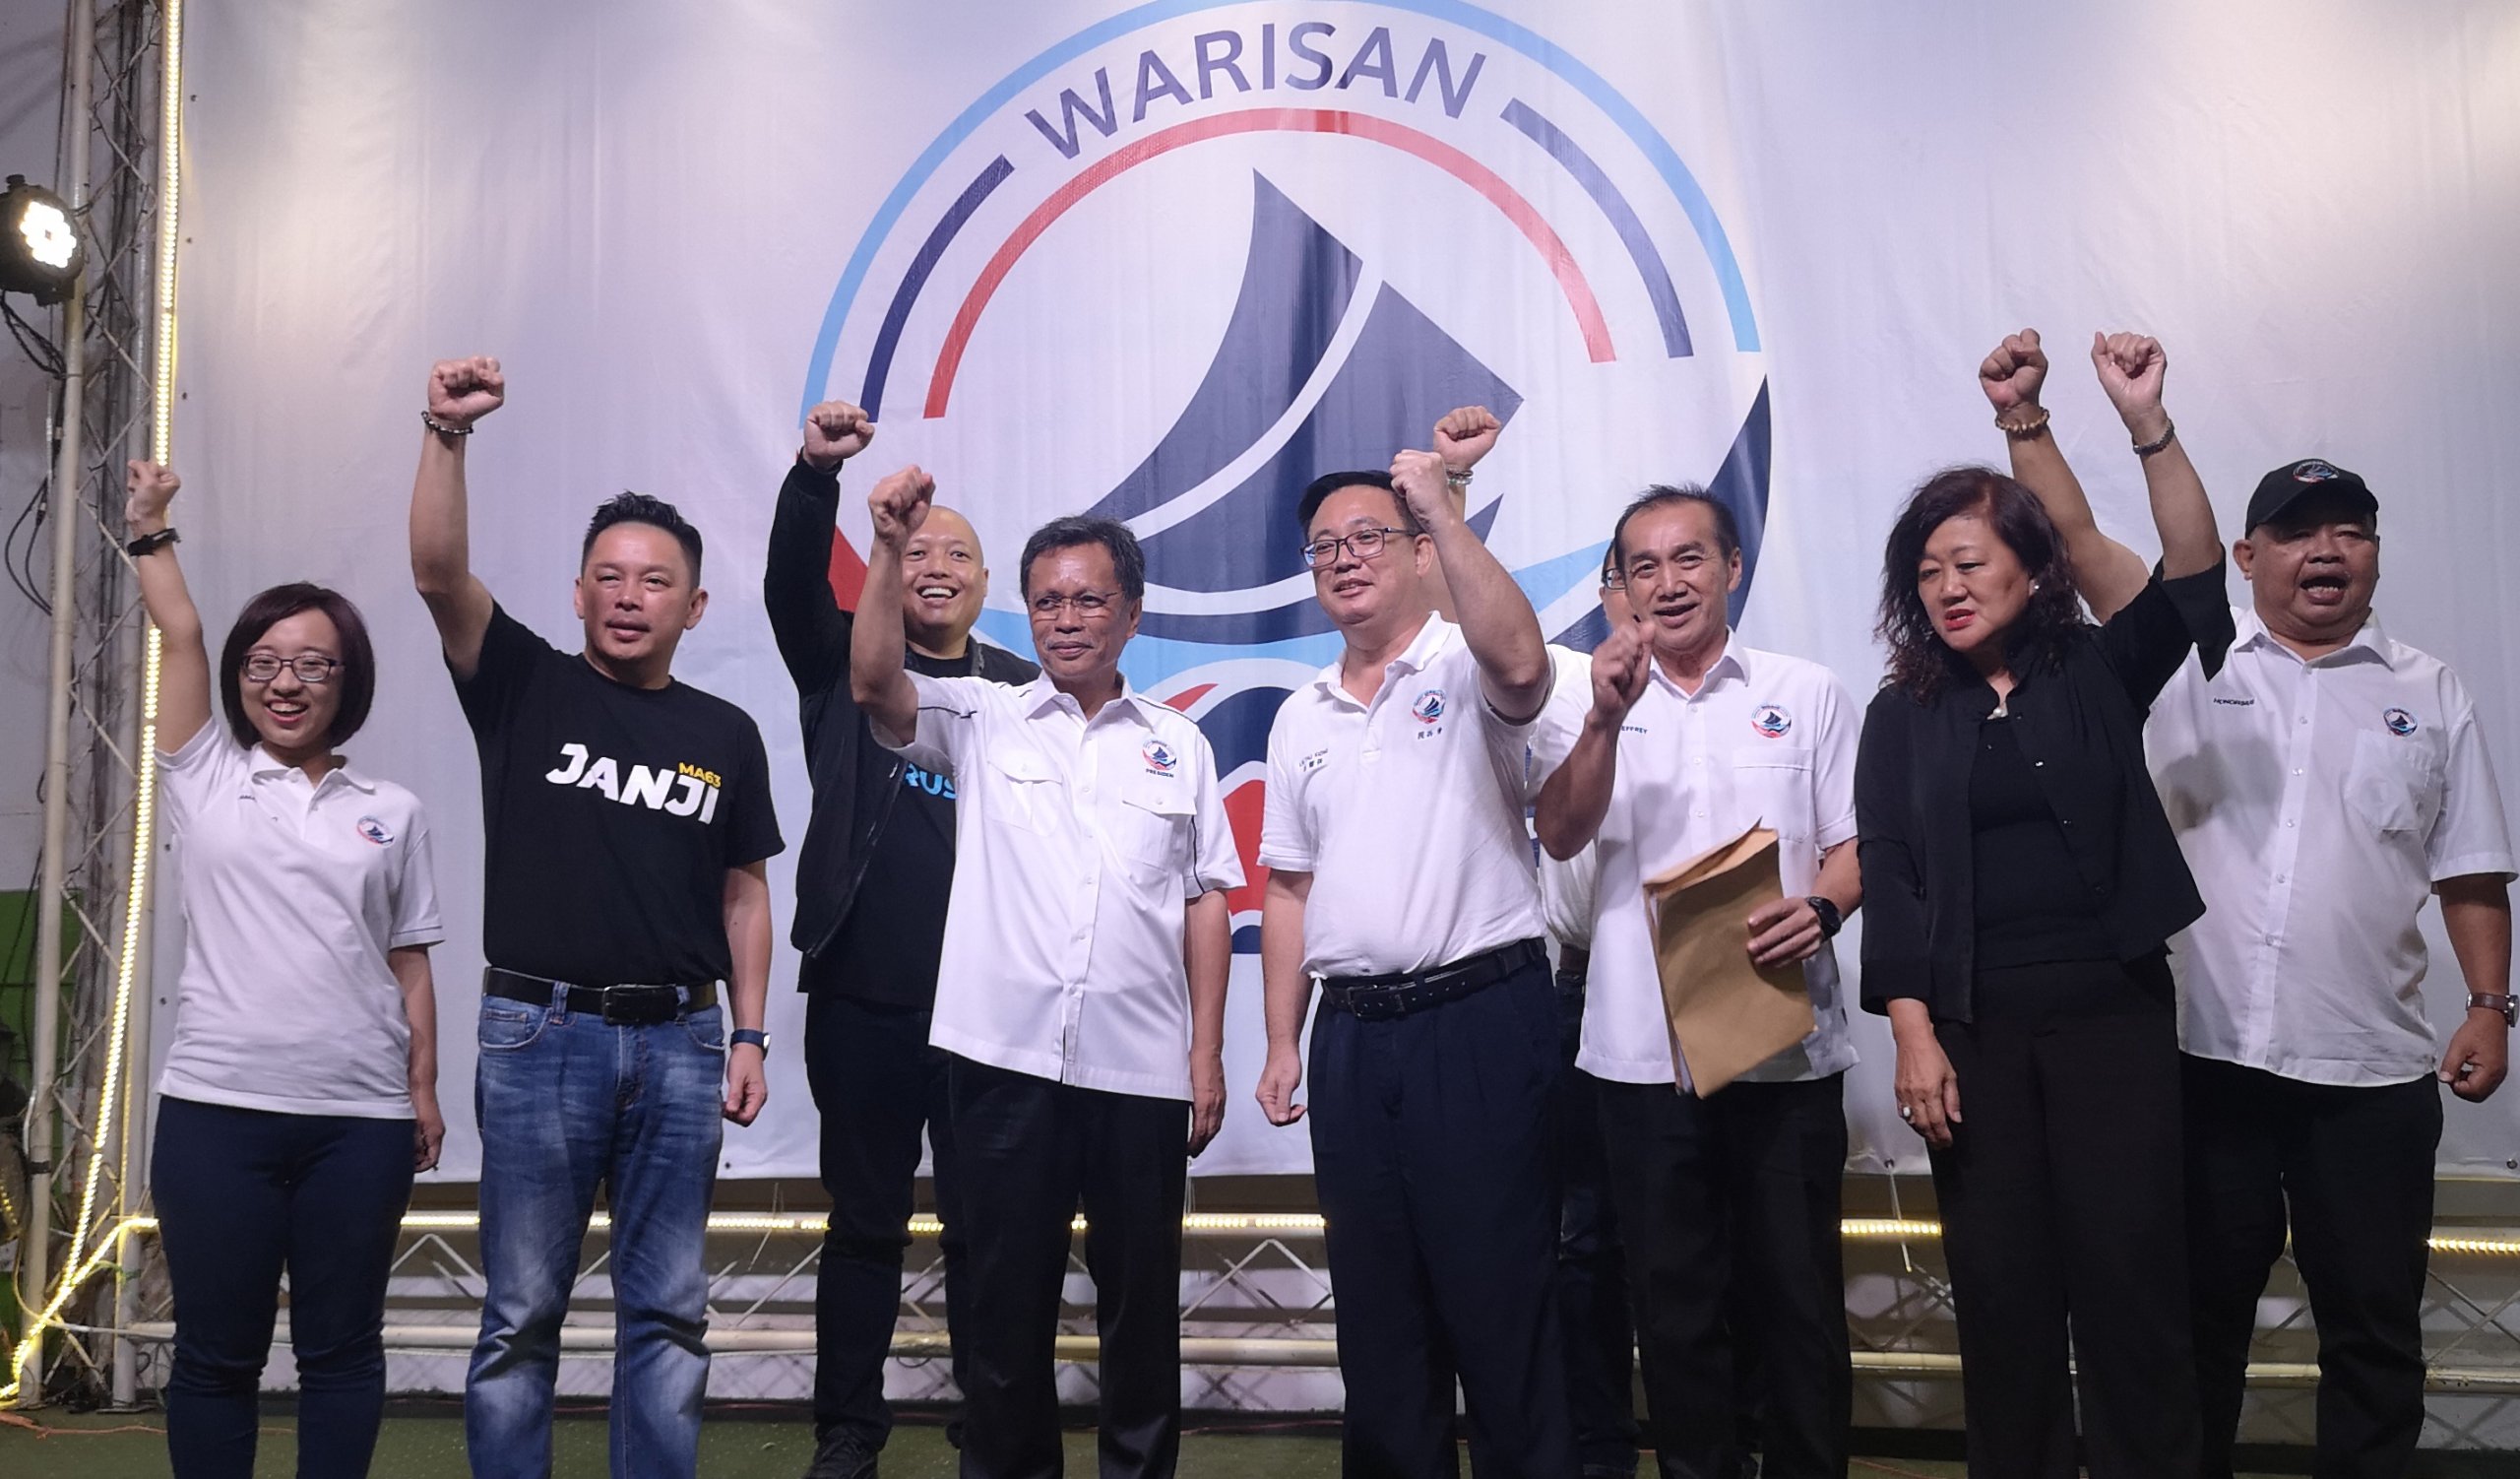 Warisan veut former une nouvelle et meilleure Malaisie